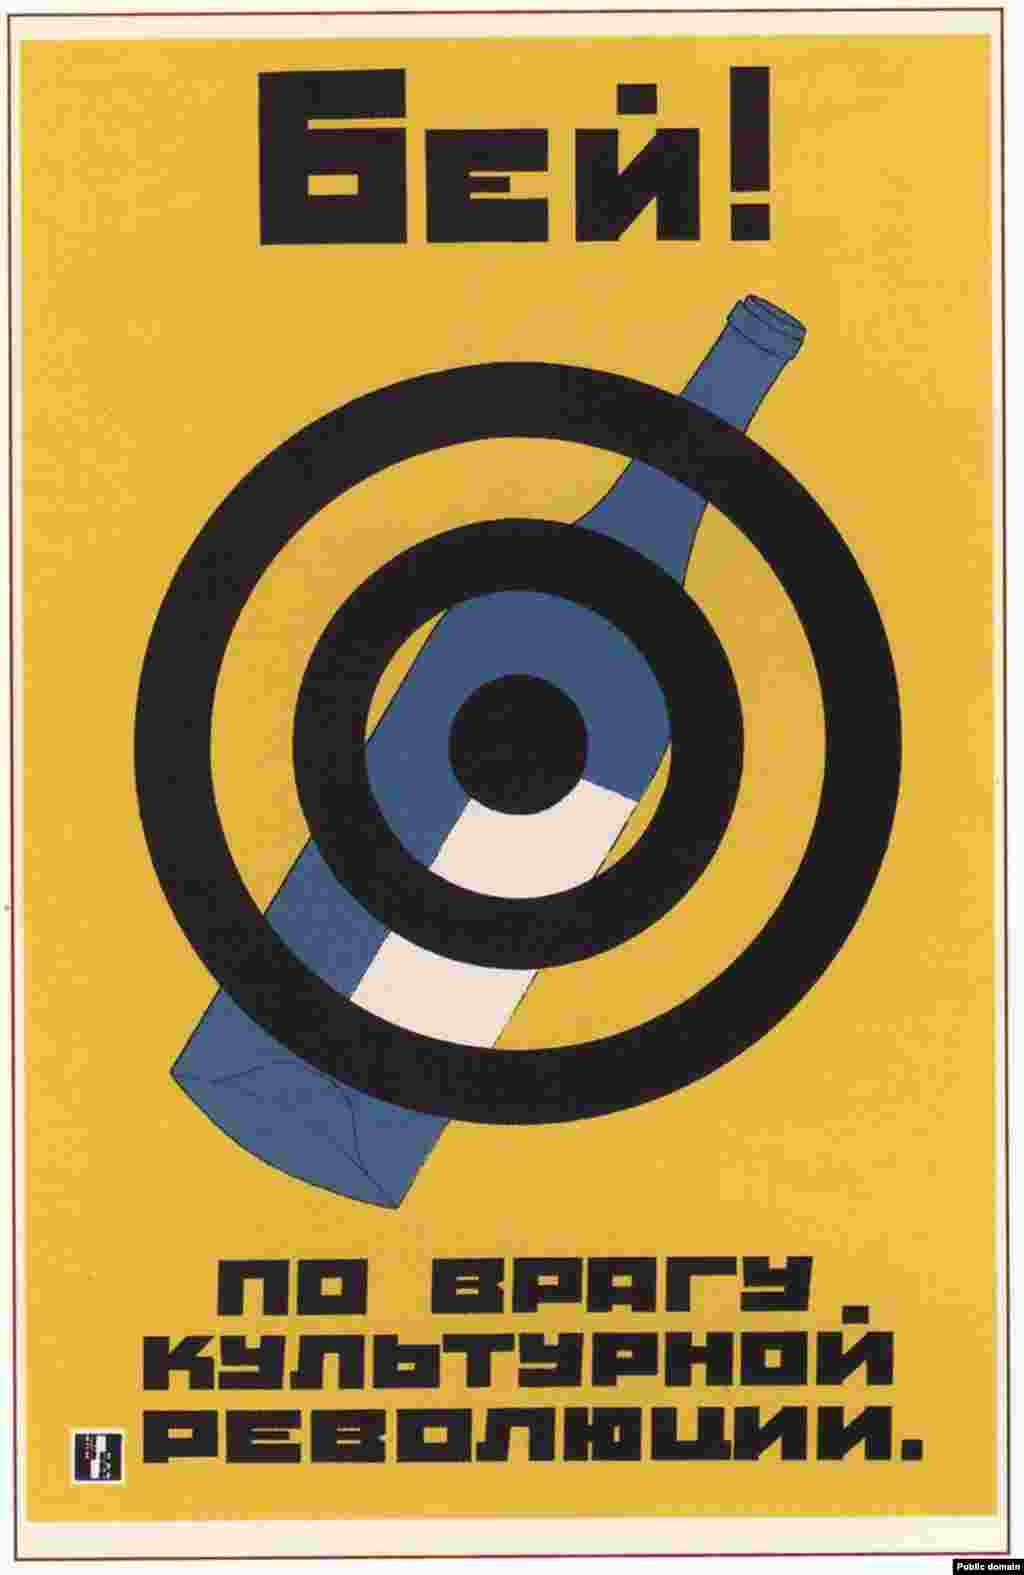 Sovjetski plakat protiv alkohola iz 1930. godine. Alkohol se ovdje označava kao &quot;neprijatelj kulturne revolucije&quot;.